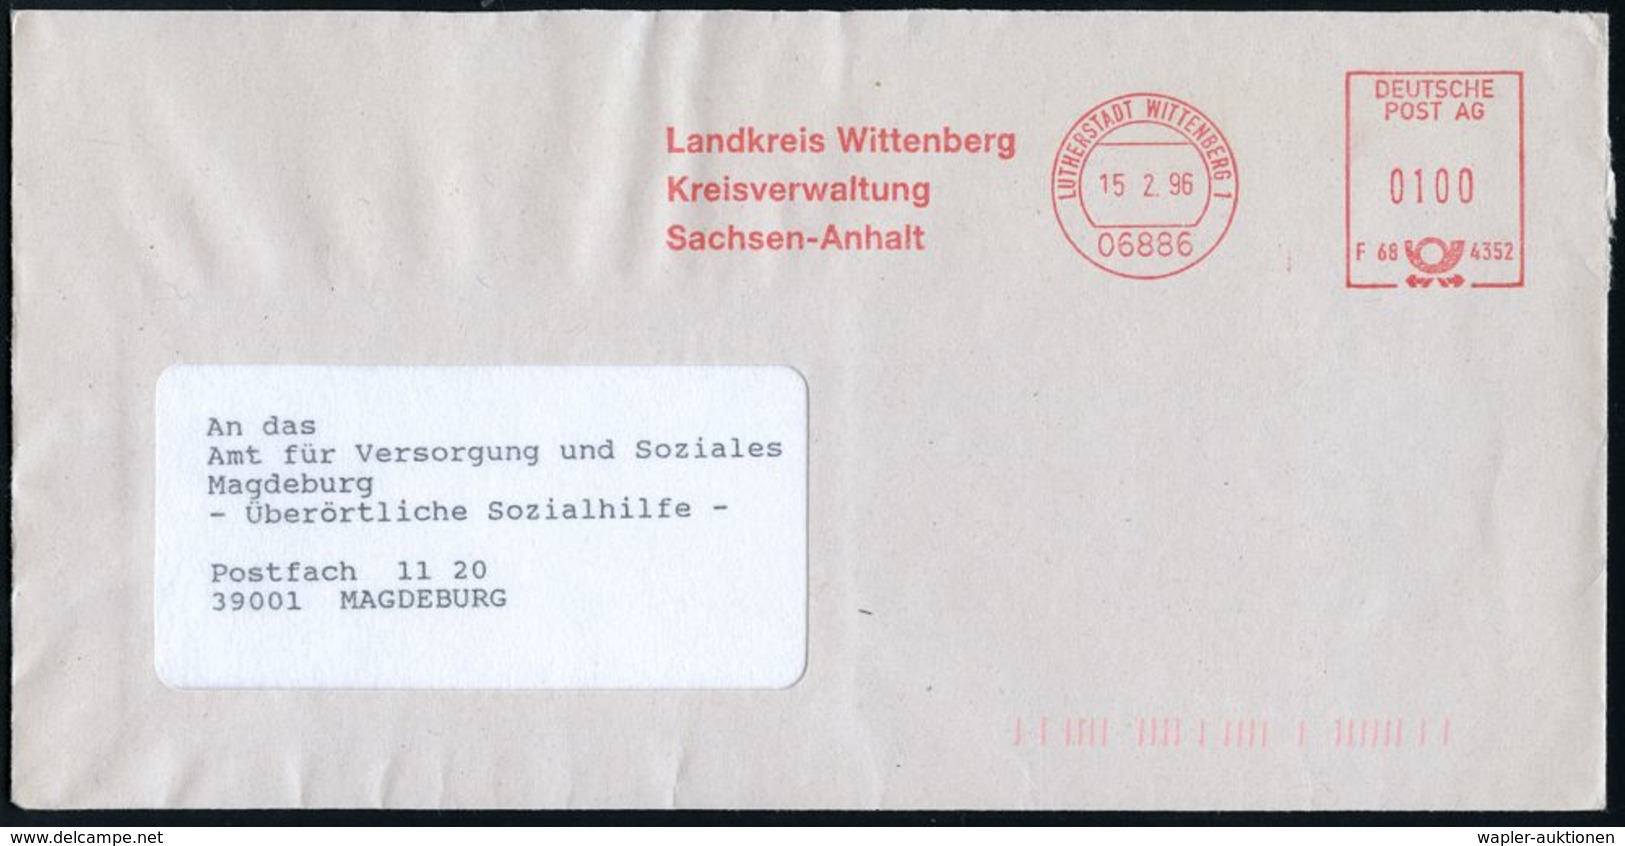 MARTIN LUTHER & REFORMATION & REFORMATOREN : 06886 LUTHERSTADT WITTENBERG 1/ F60 4352/ Landkreis Wittenberg.. 1996 (15.2 - Christianisme